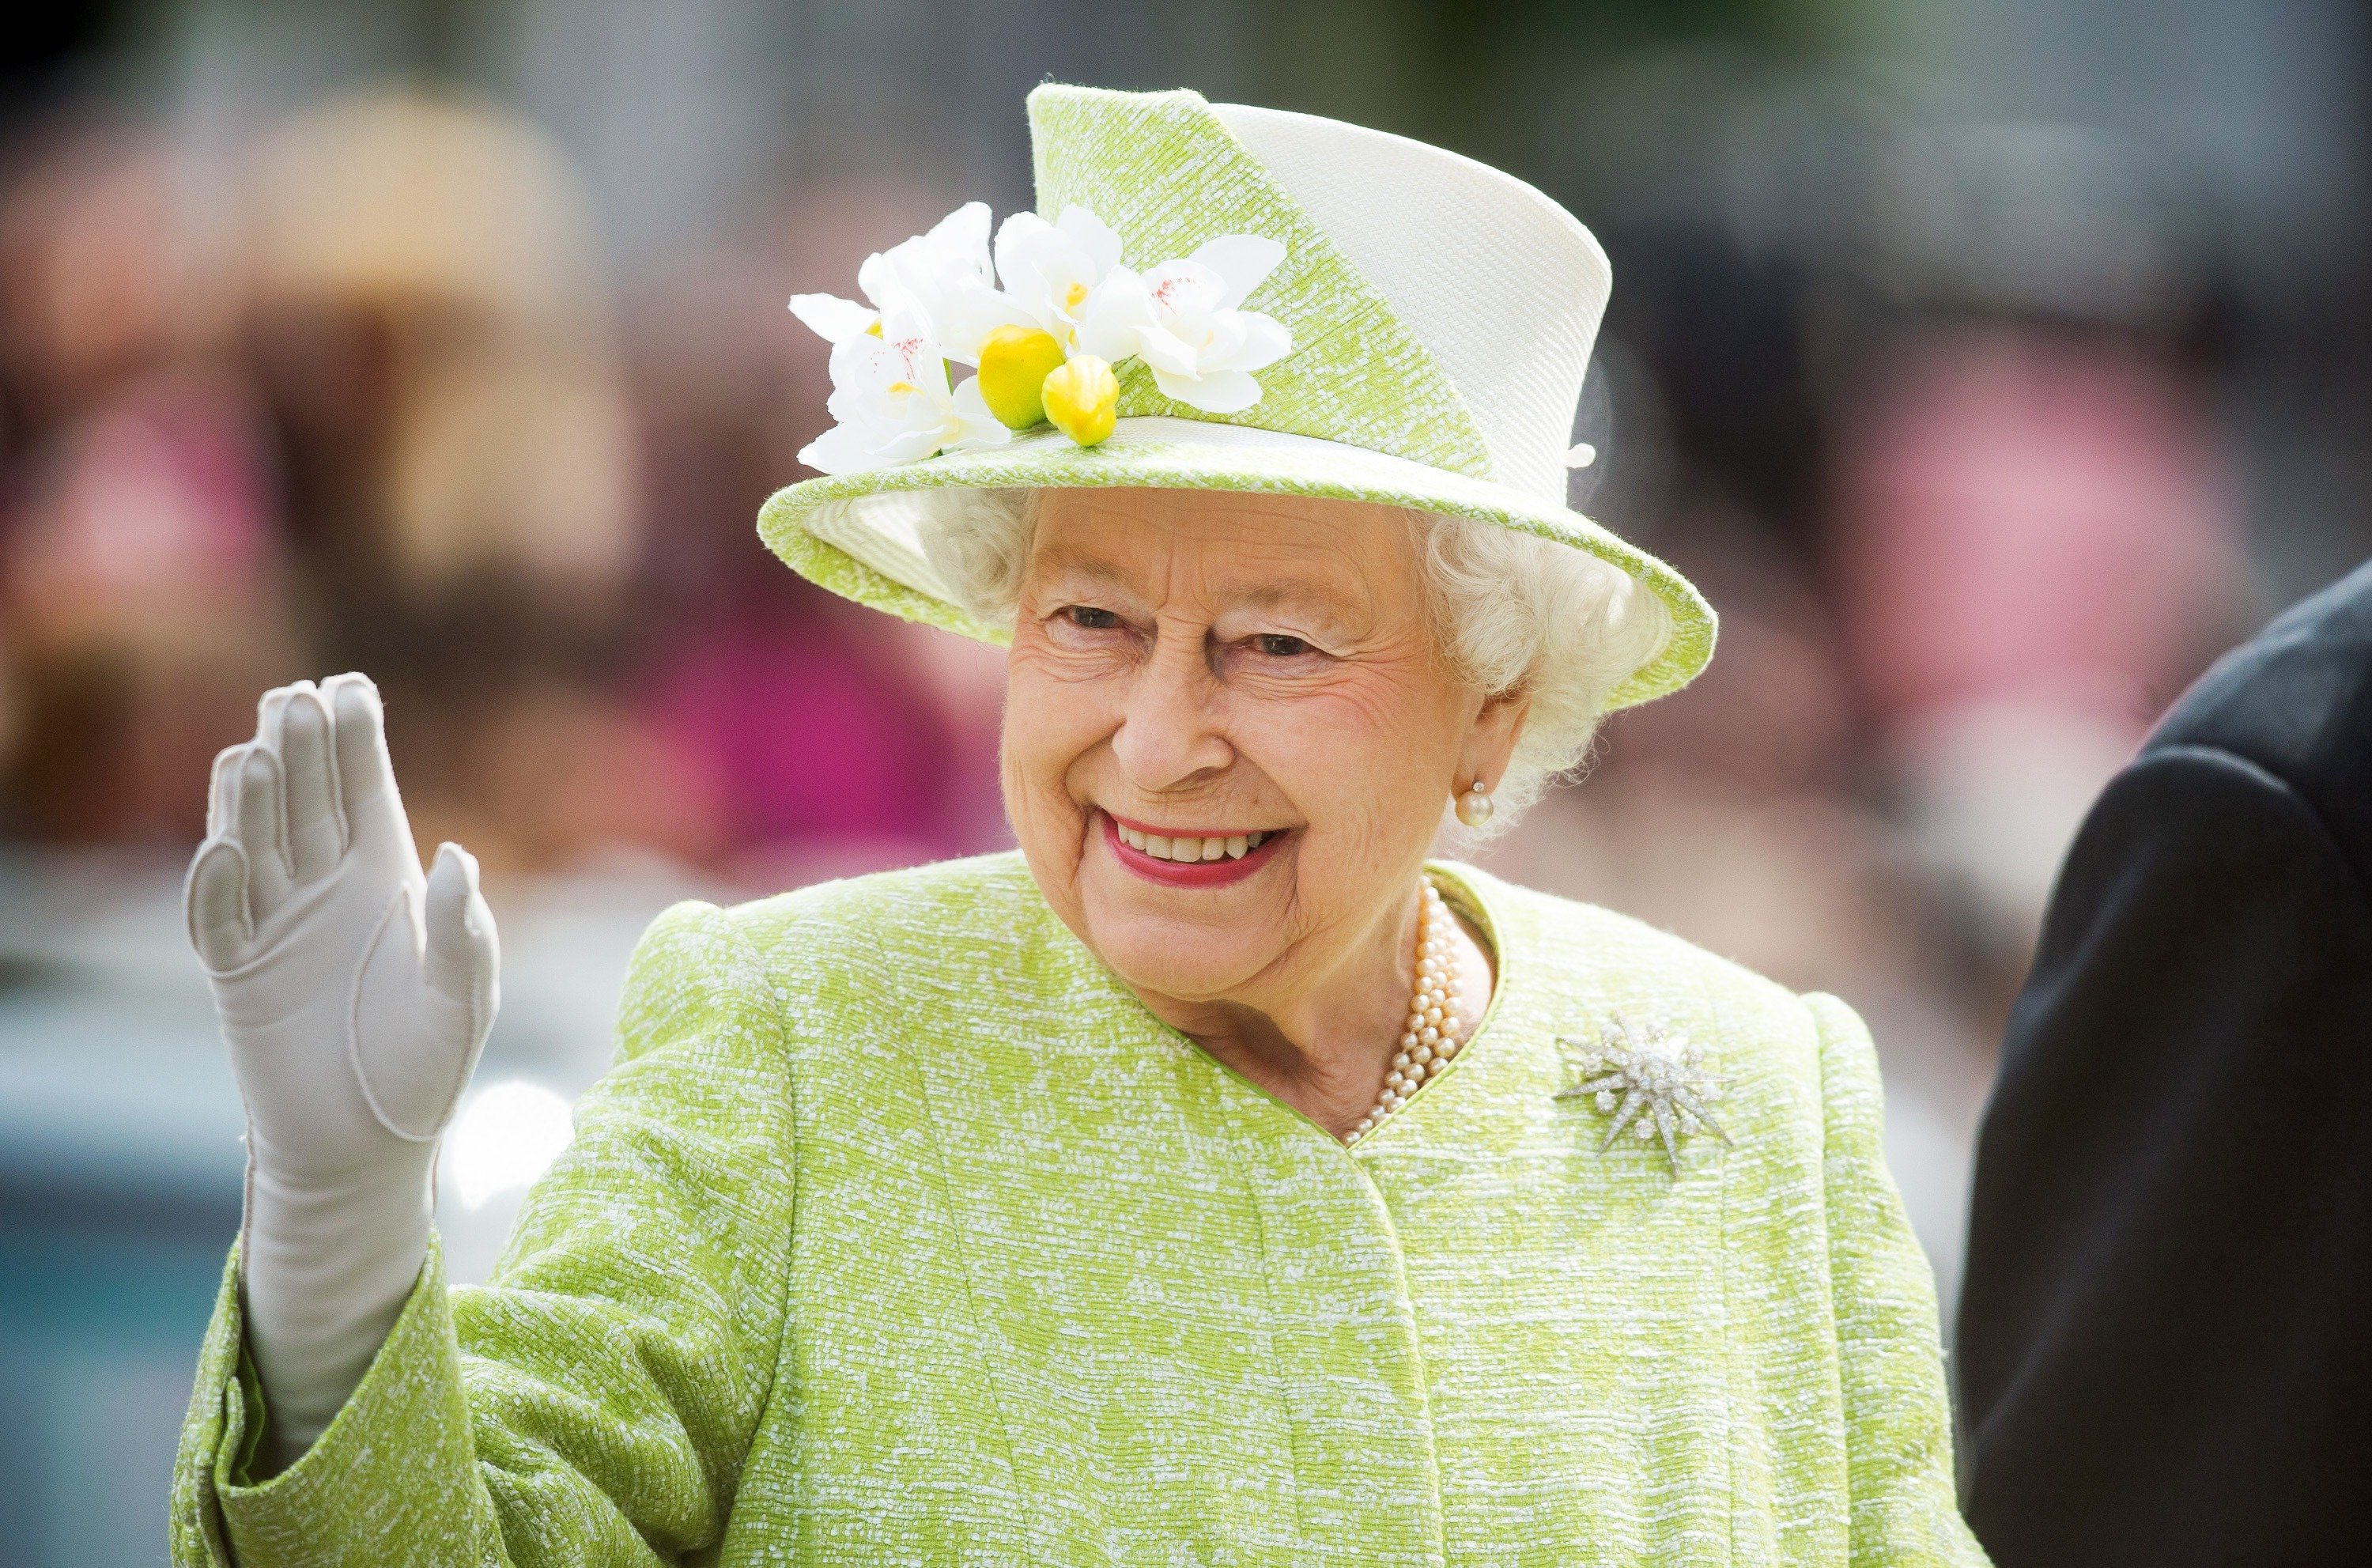 Königin Elizabeth II. winkt während eines Rundgangs durch Windsor an ihrem 90. Geburtstag am 21. April 2016 in Windsor, England. | Quelle: Getty Images